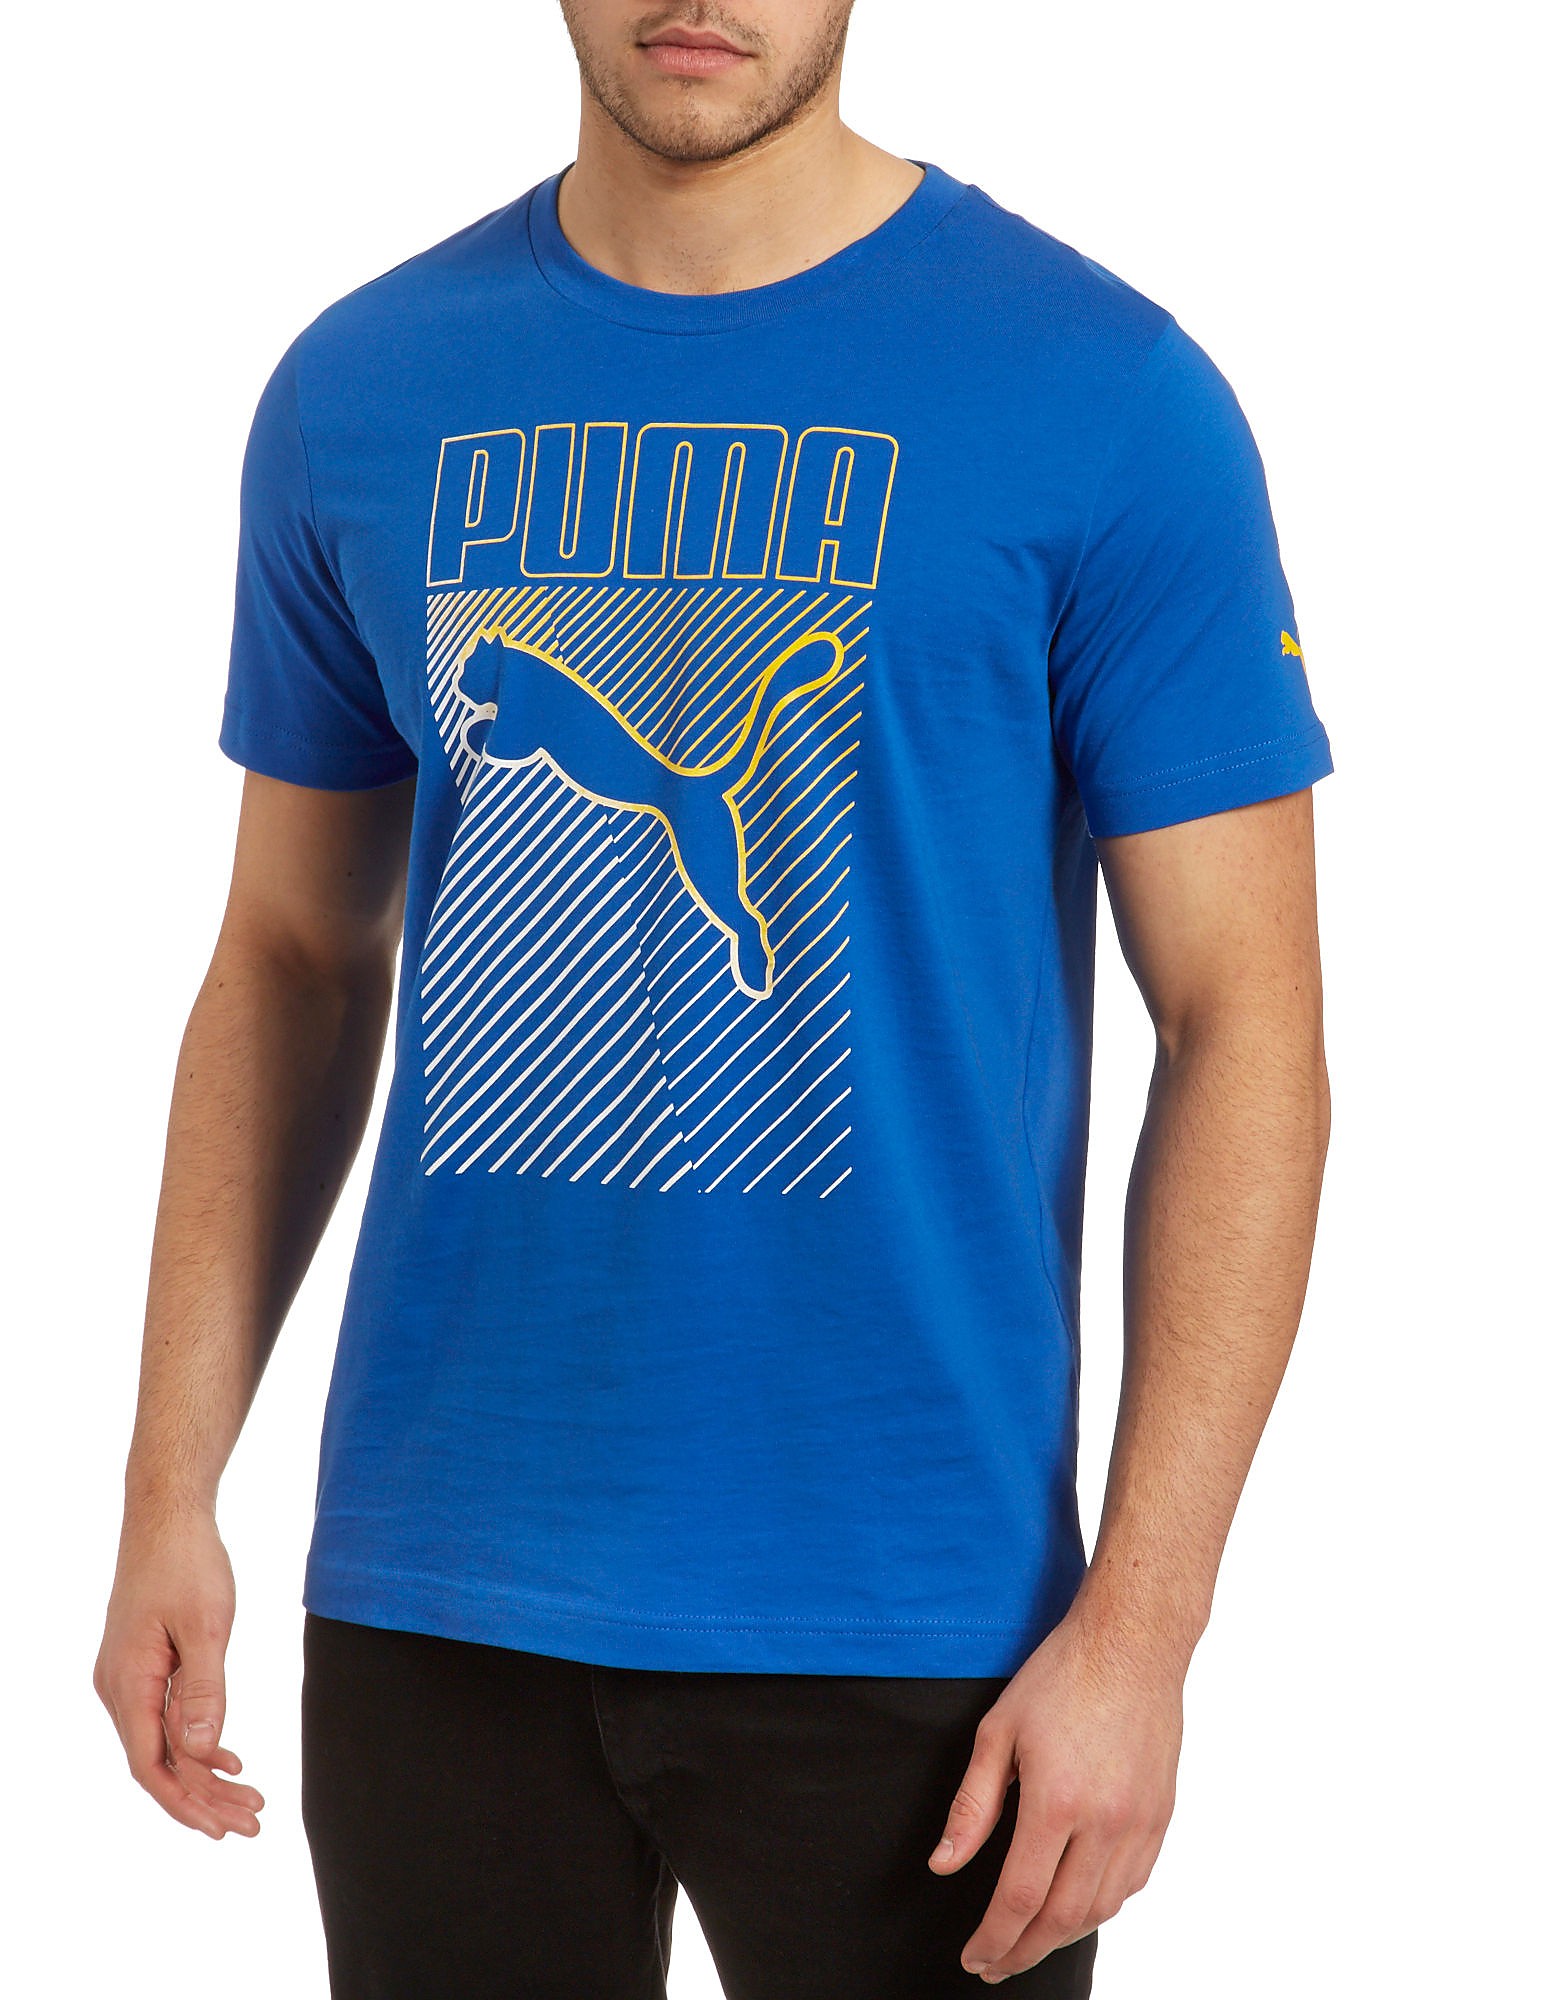 Puma Grade T-Shirt